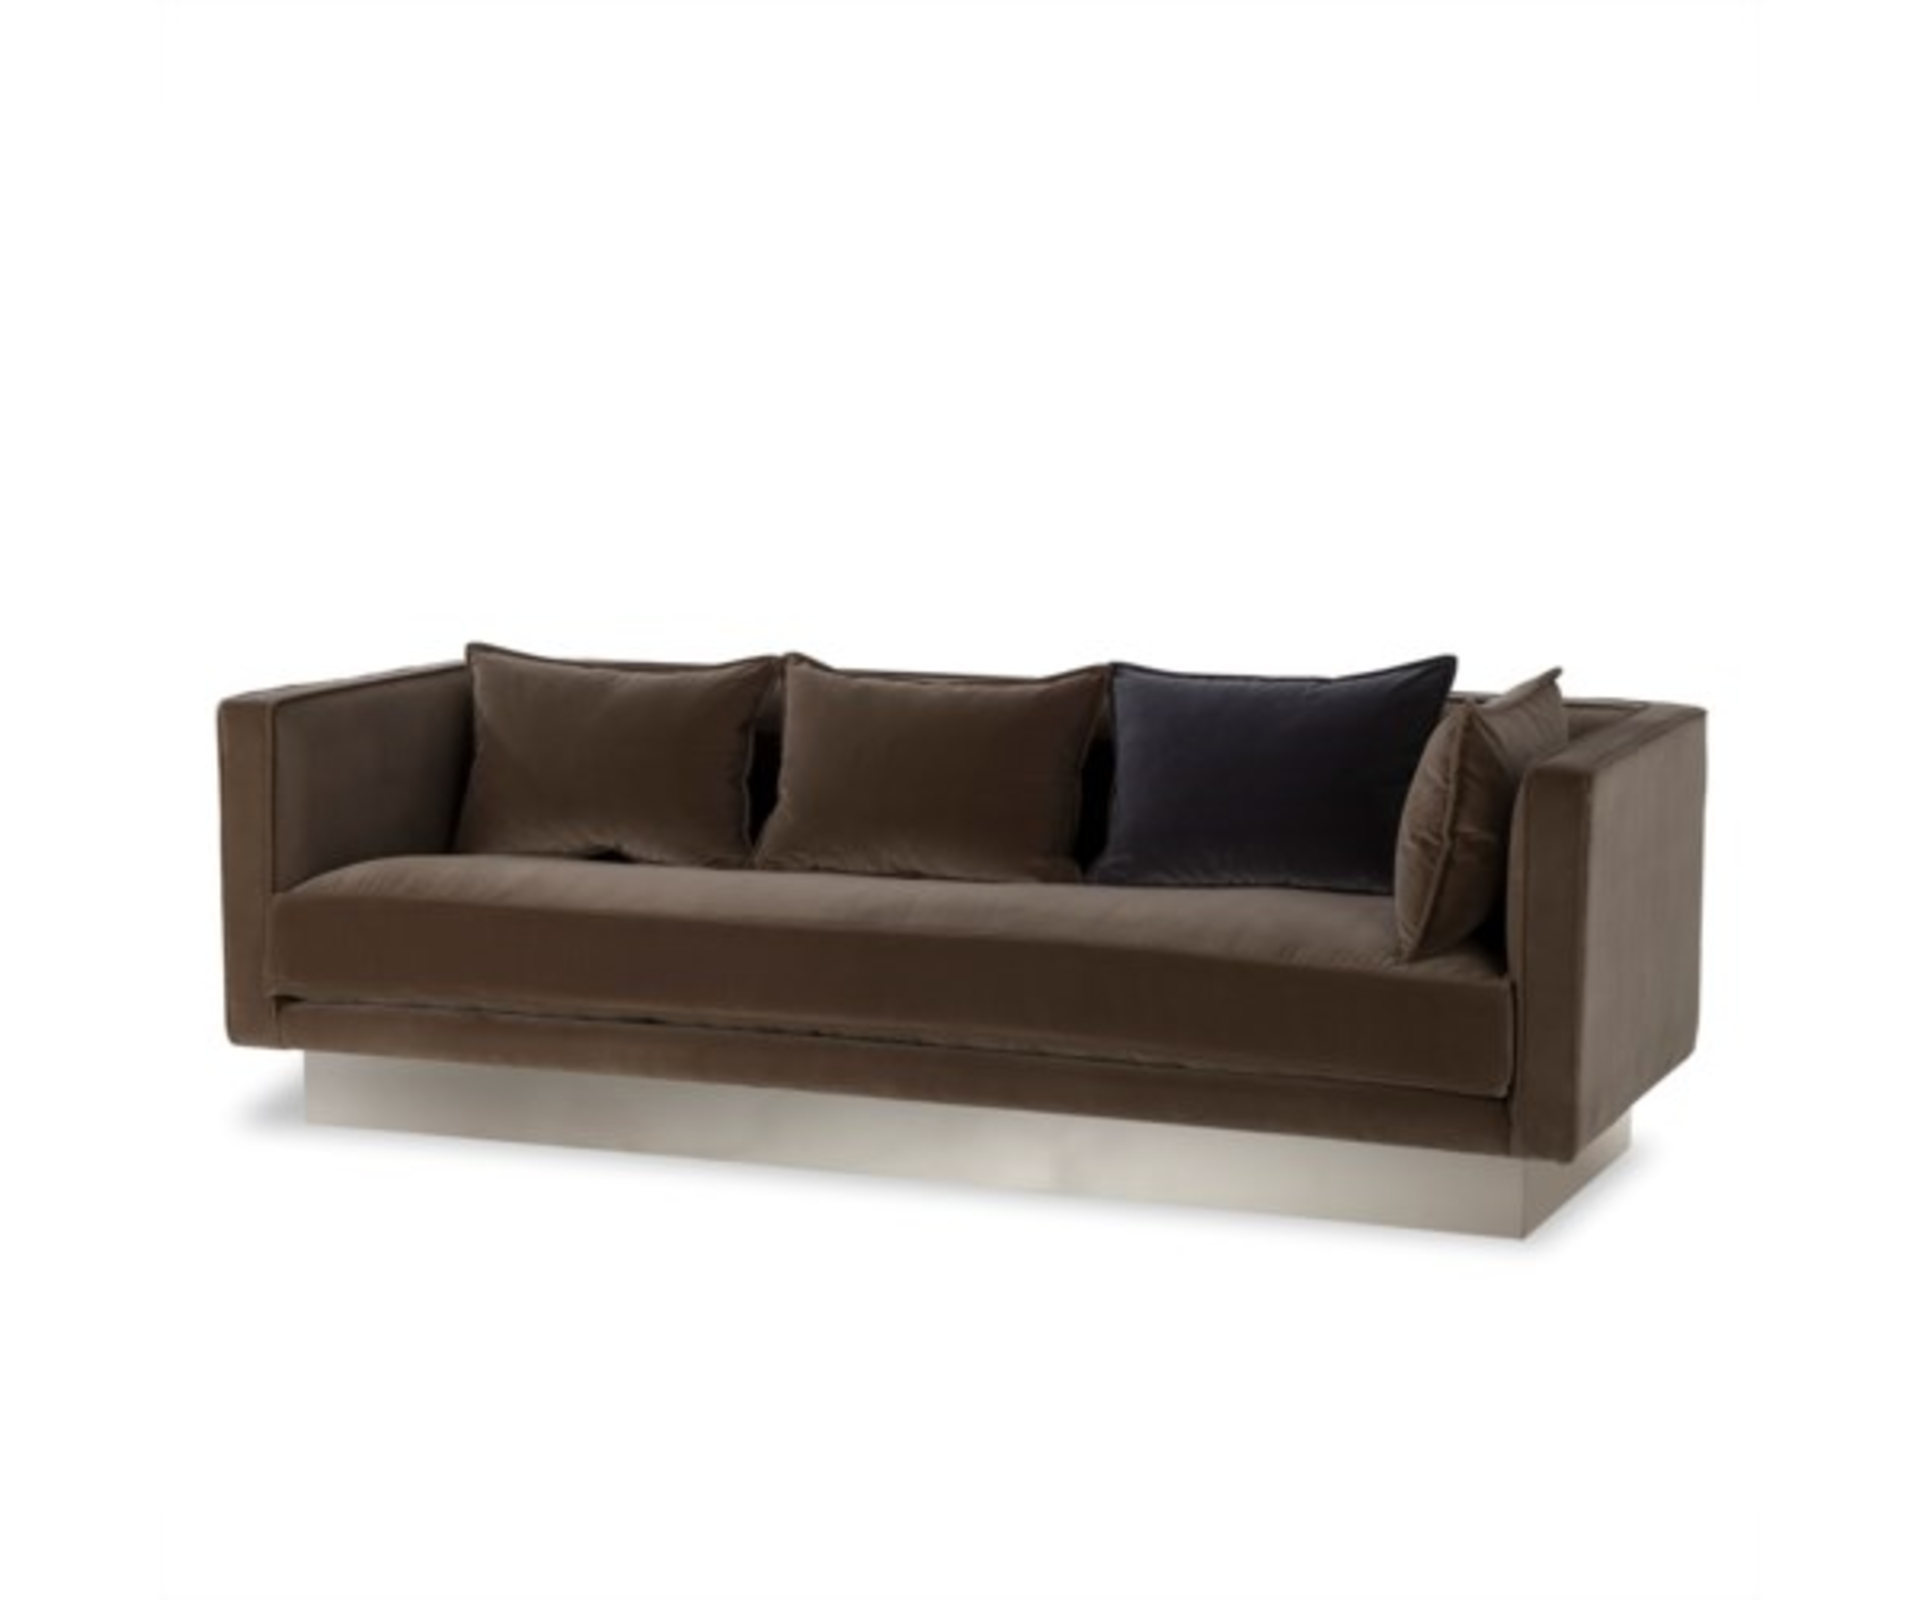 Dylan Bench Seat Sofa - Image 2 of 2